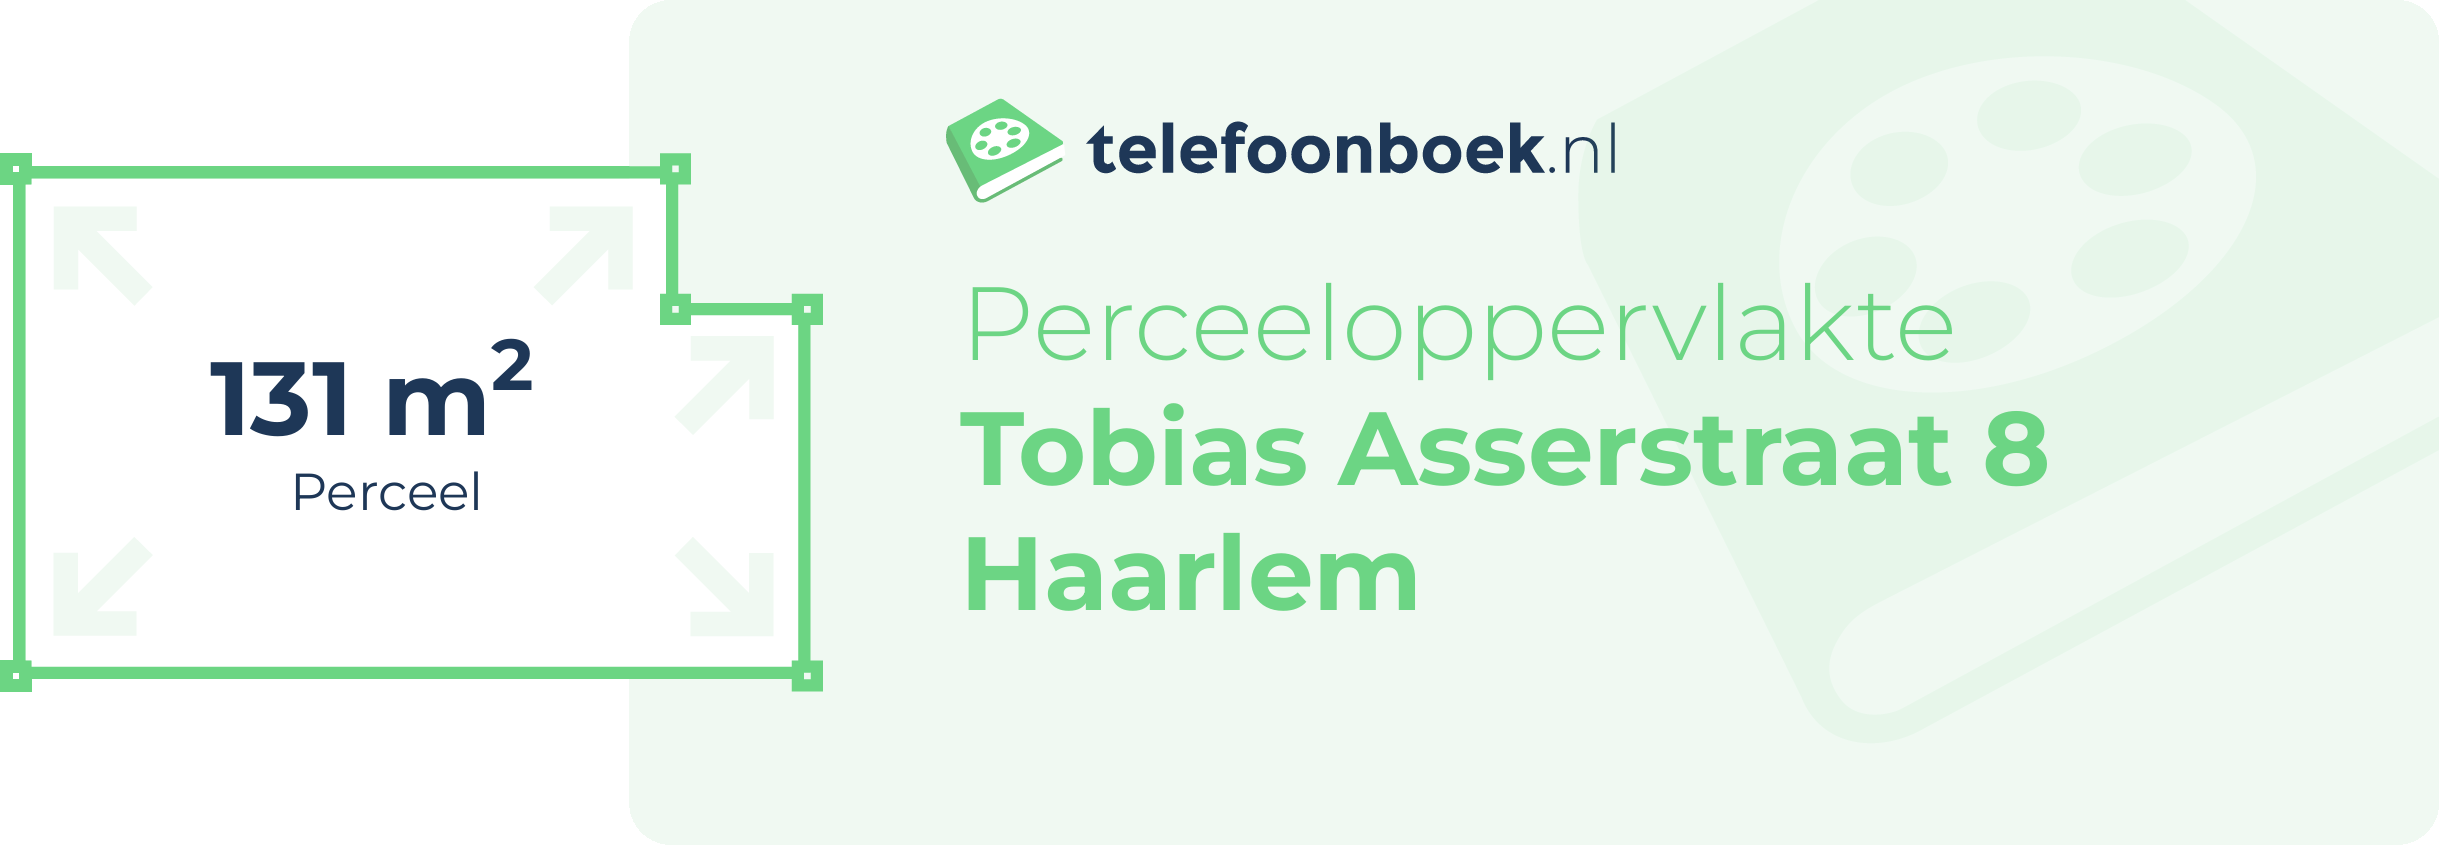 Perceeloppervlakte Tobias Asserstraat 8 Haarlem